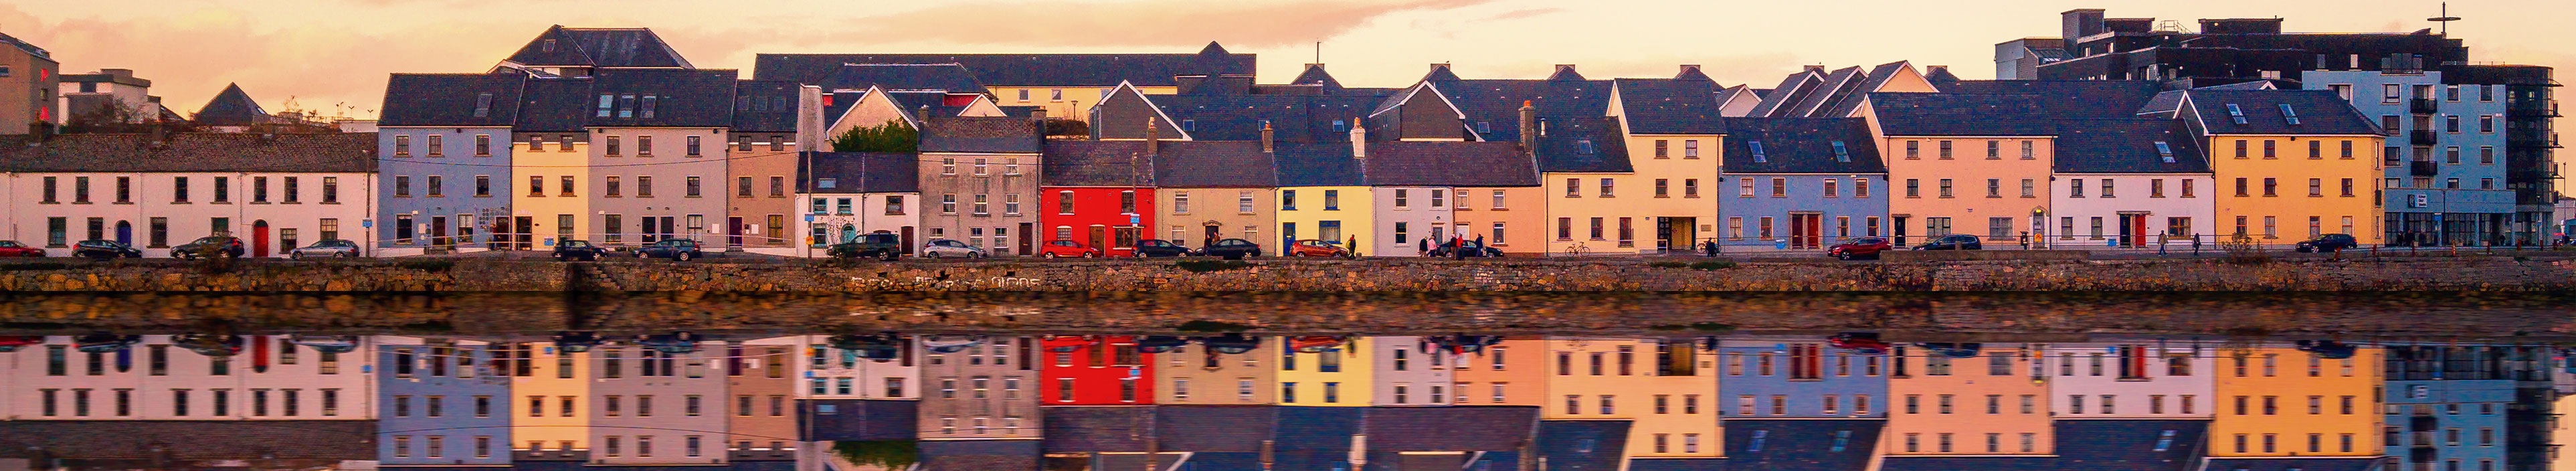 Blick auf Häuser in Galway, Irland